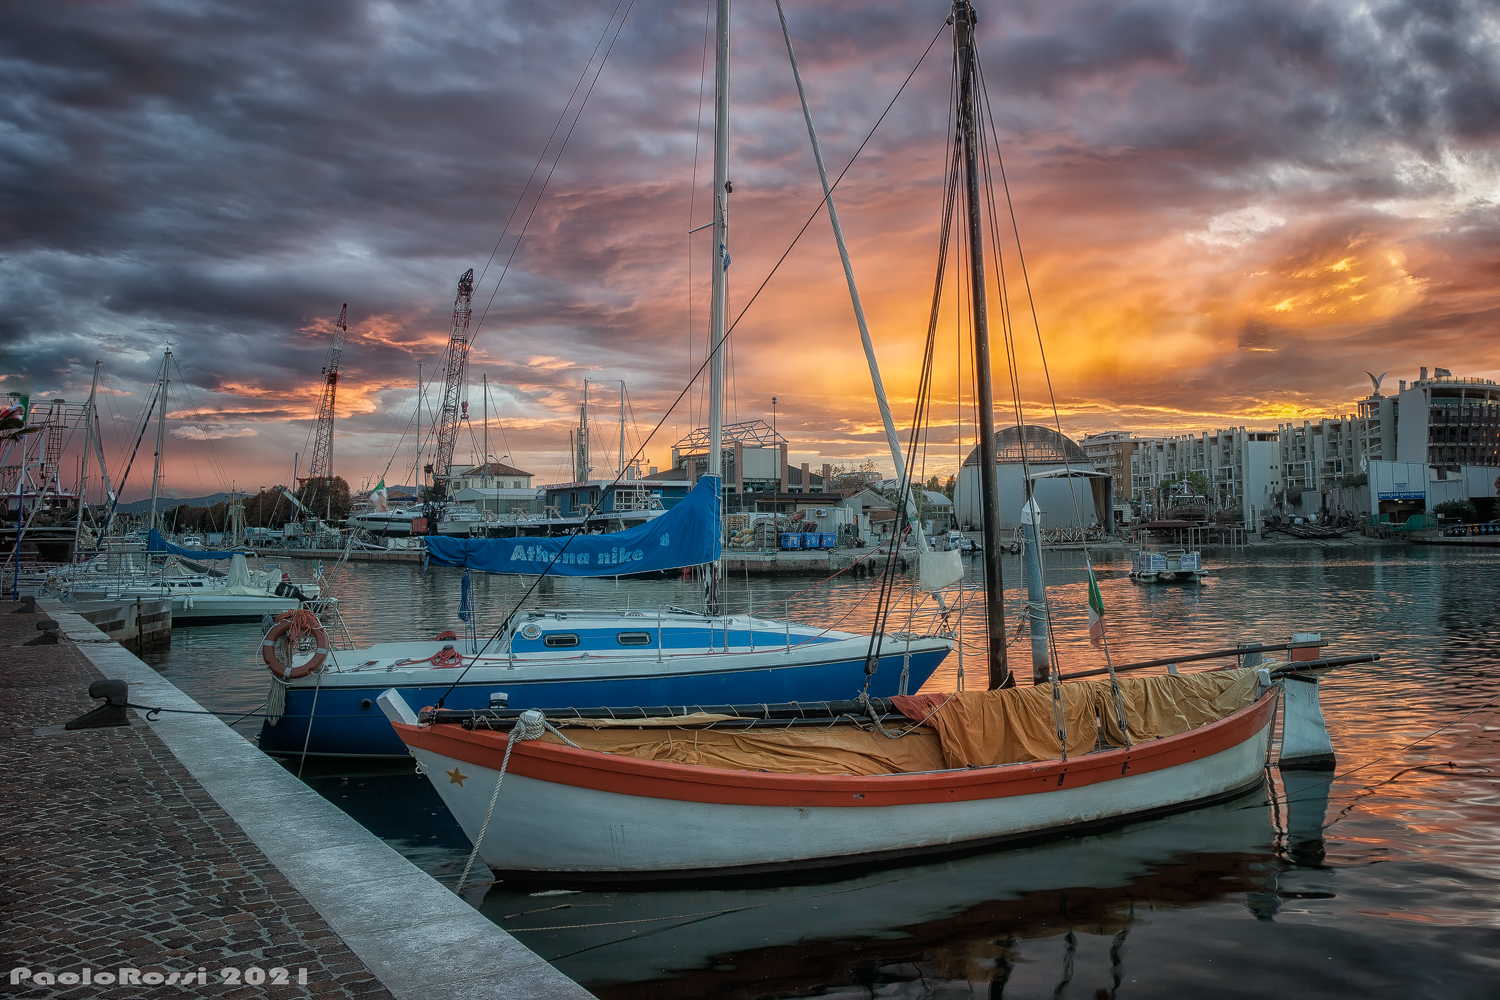 Boats at sunset.....